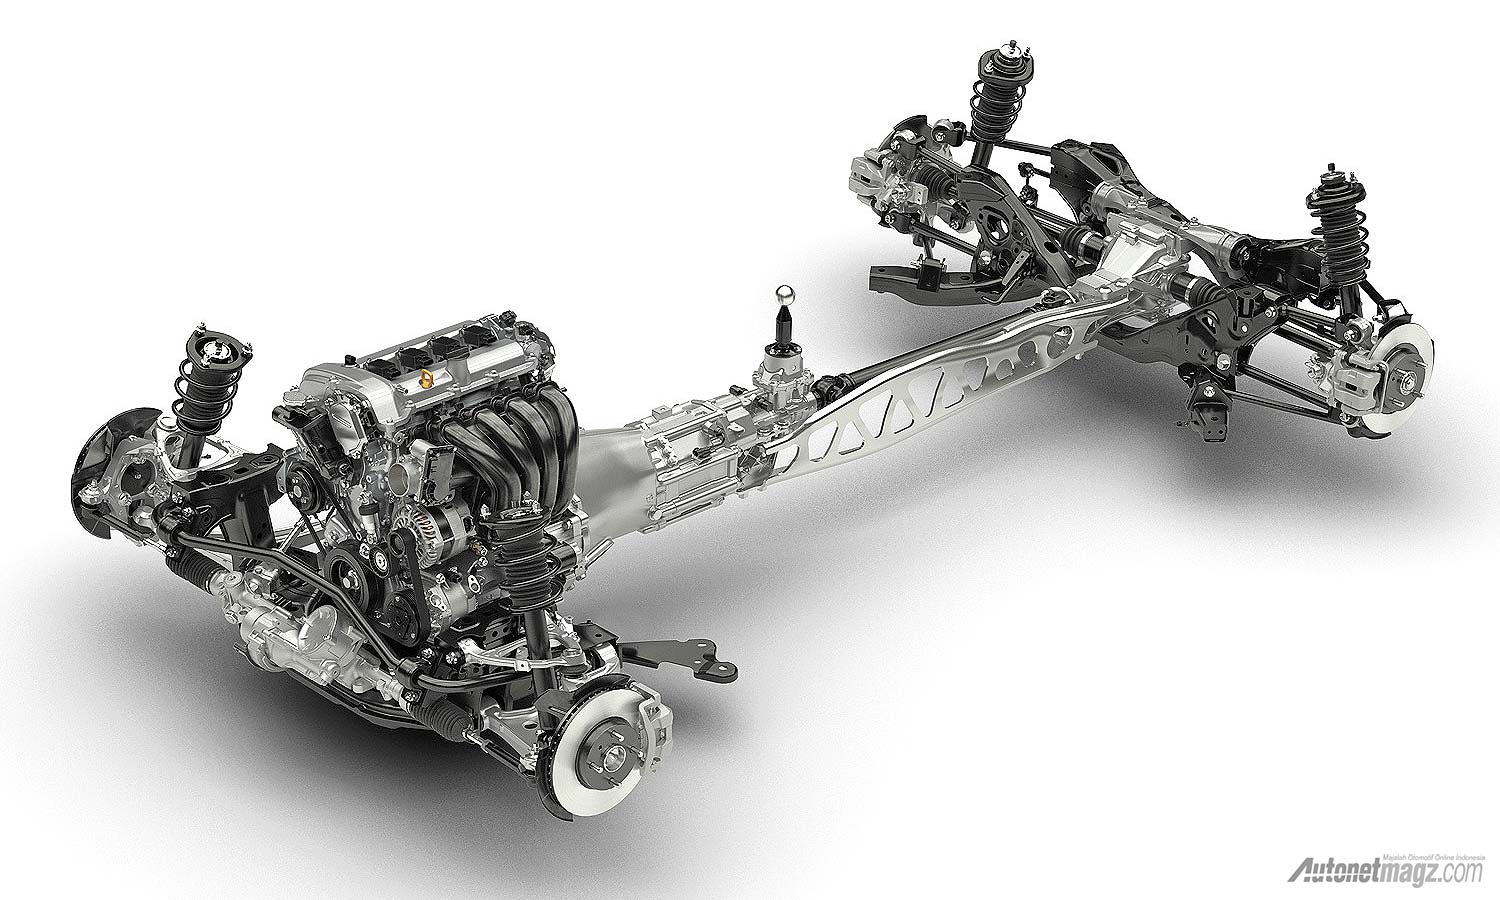 International, 2015 Mazda MX5 SkyActiv Chassis: Mazda MX-5 2015 Akan Diperkenalkan September ini